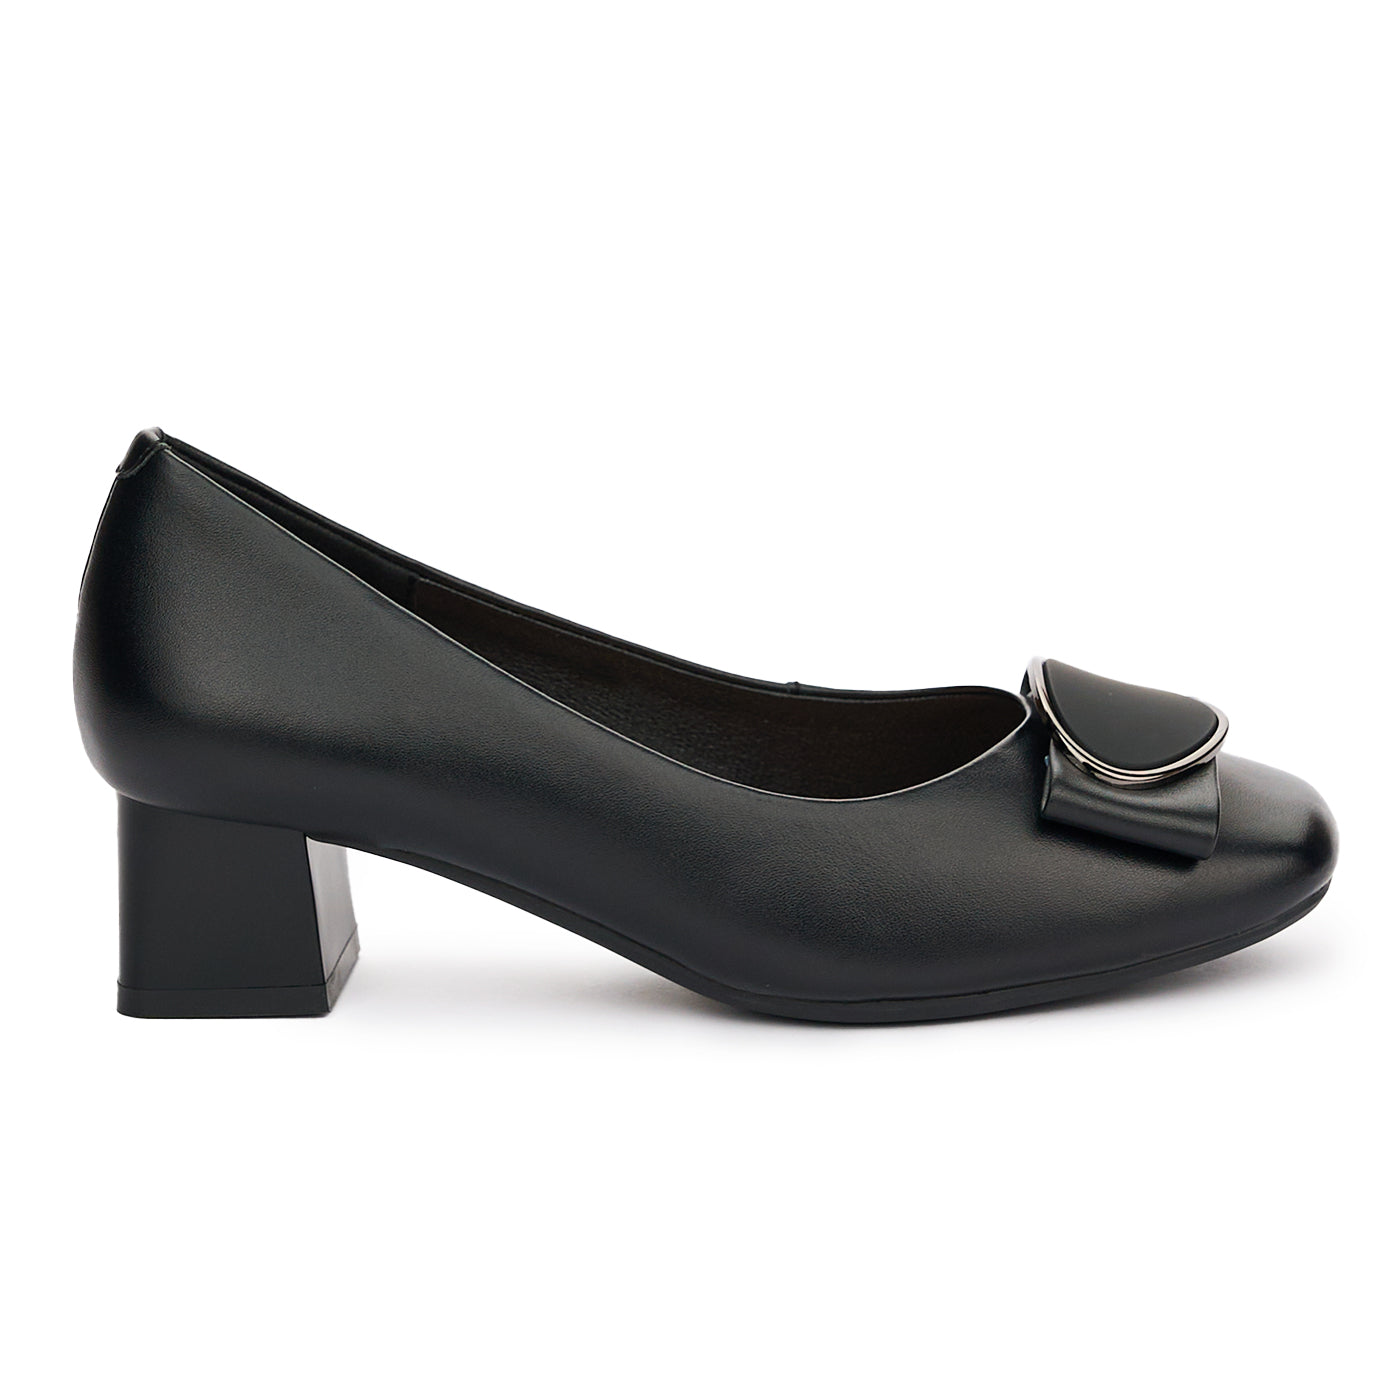 Pantofi dama din piele naturala neagra toc de 4cm 13099